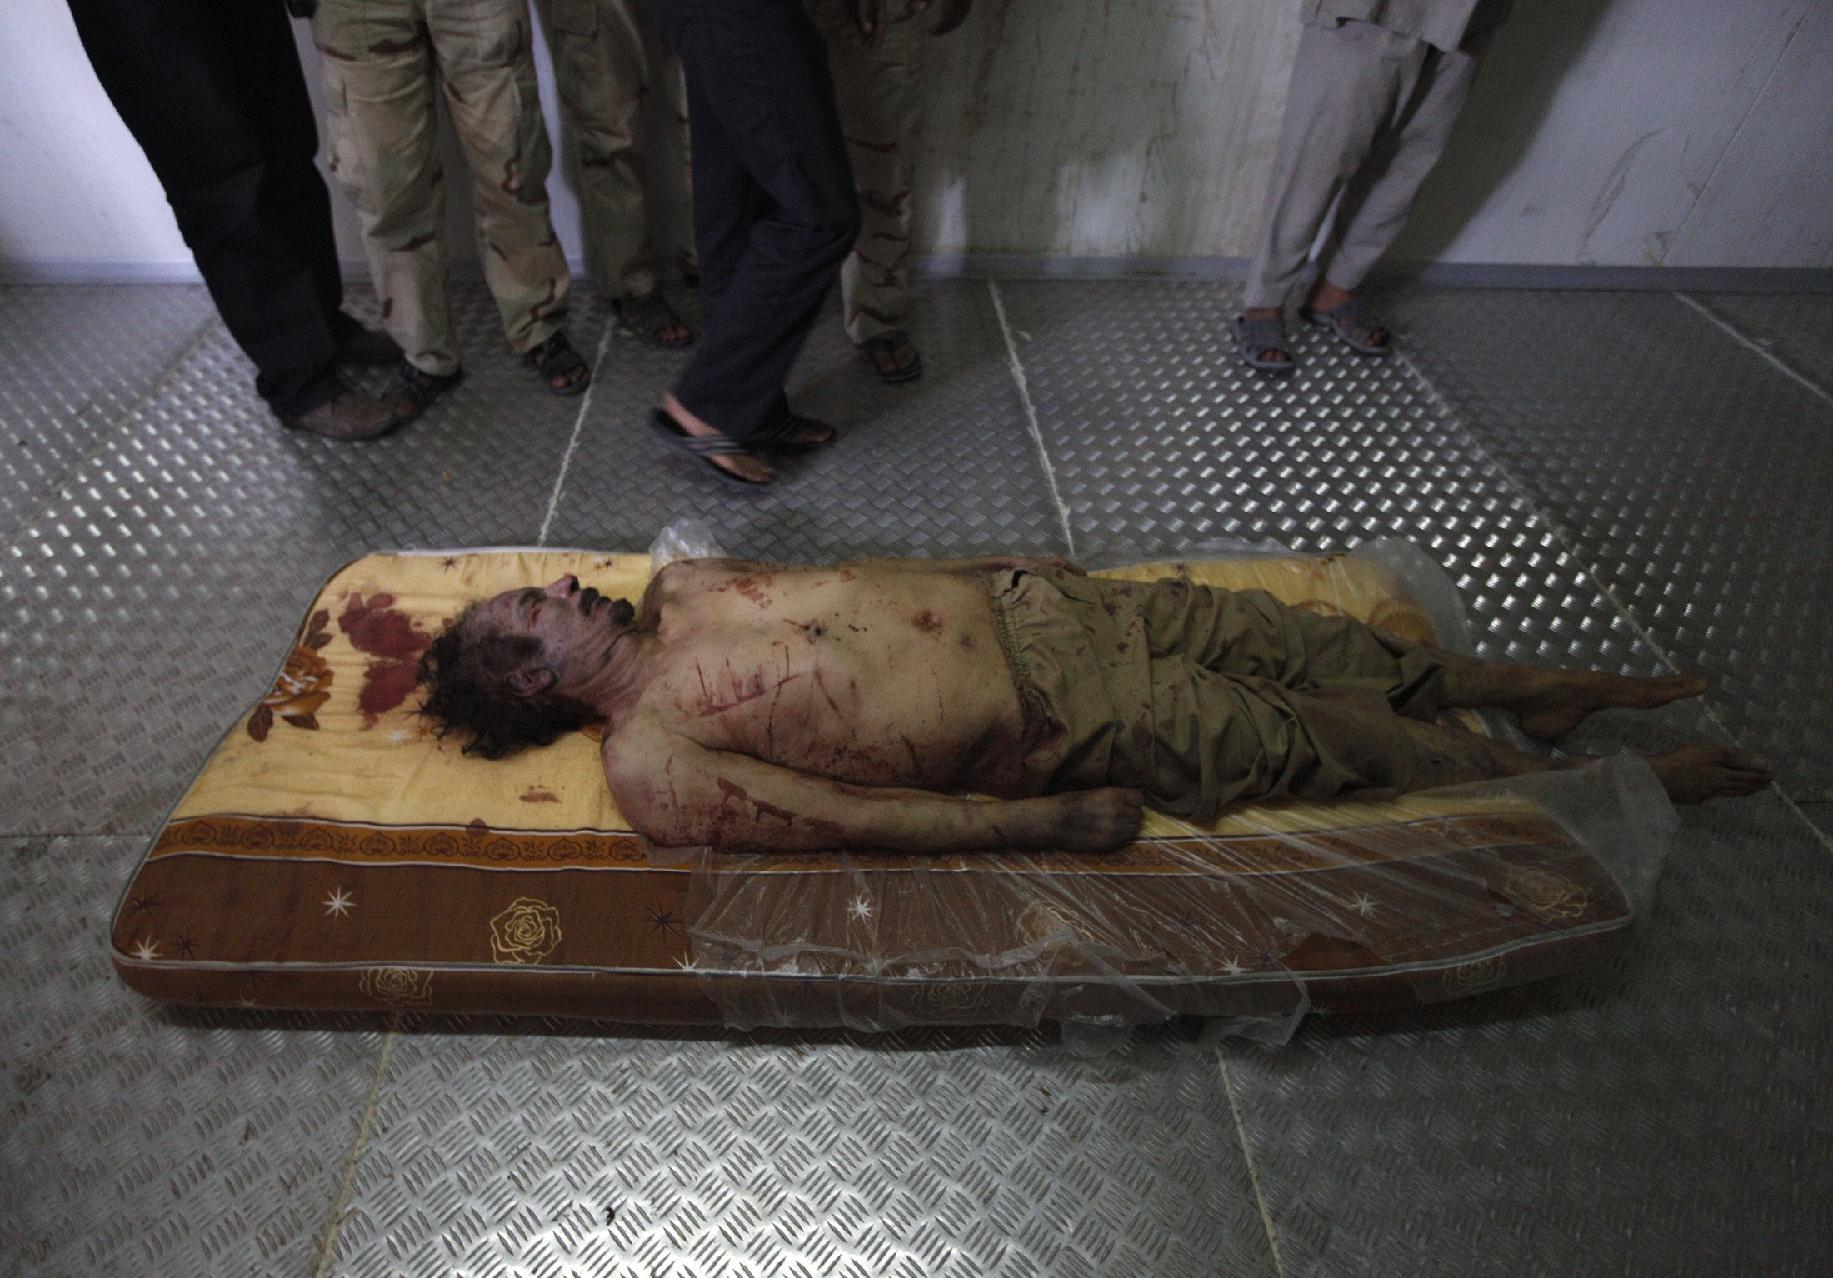 Σε τραύμα από σφαίρα οφείλεται ο θάνατος του Καντάφι